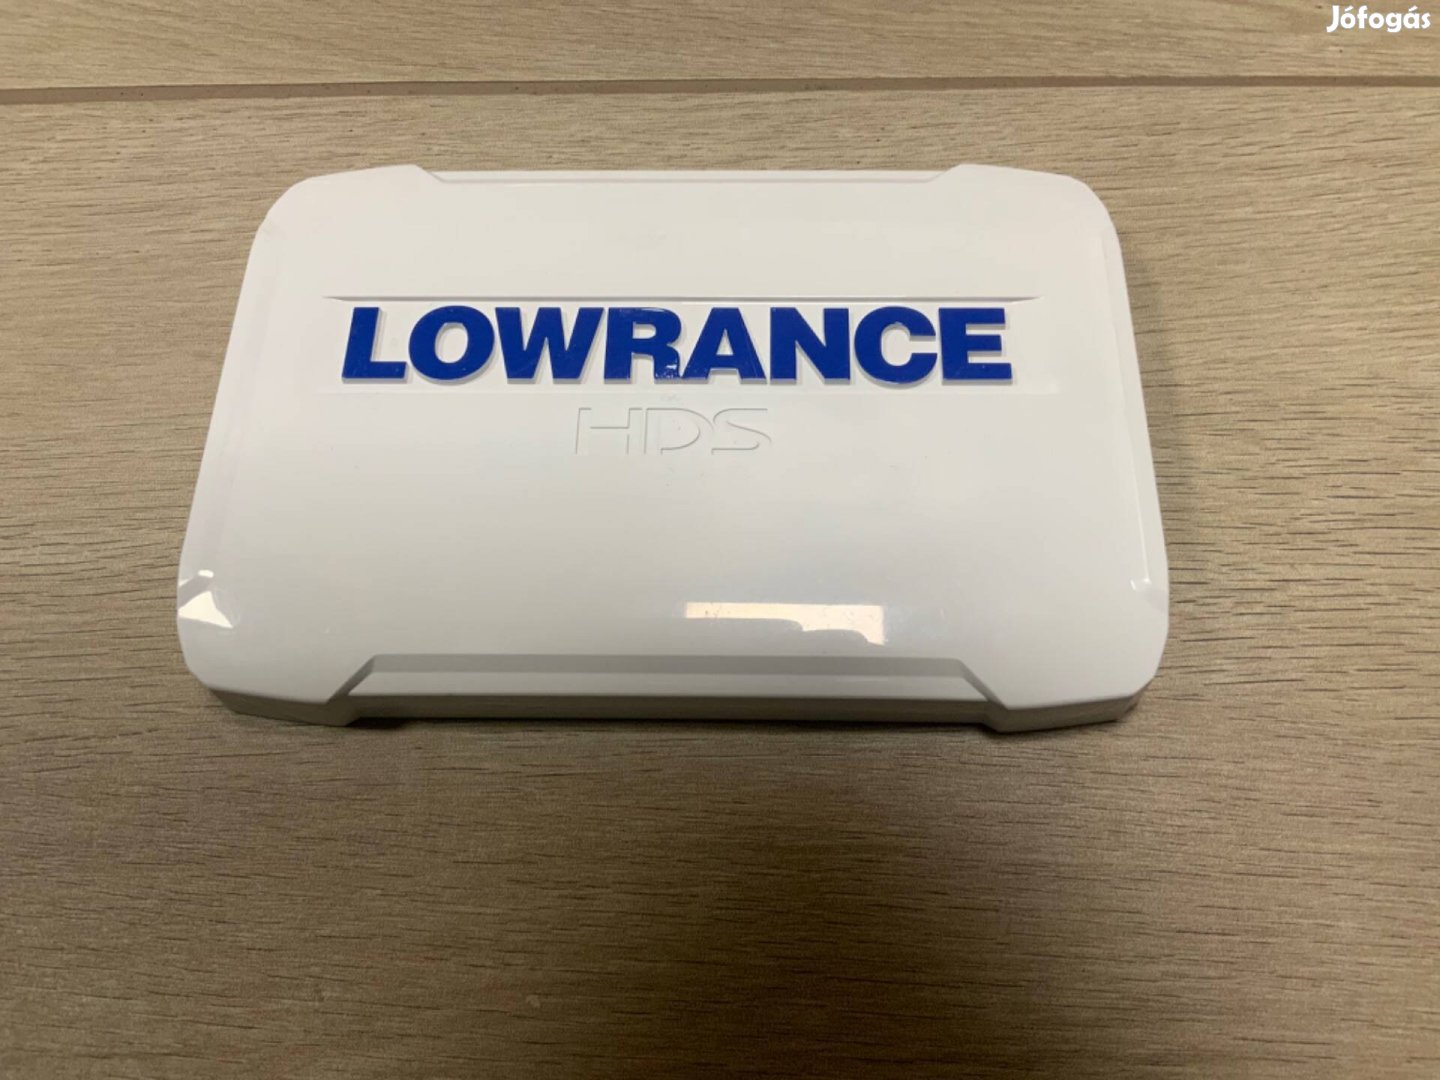 Lowrance Hds7 Halradar képernyővédő újszerű állapotú eladó!